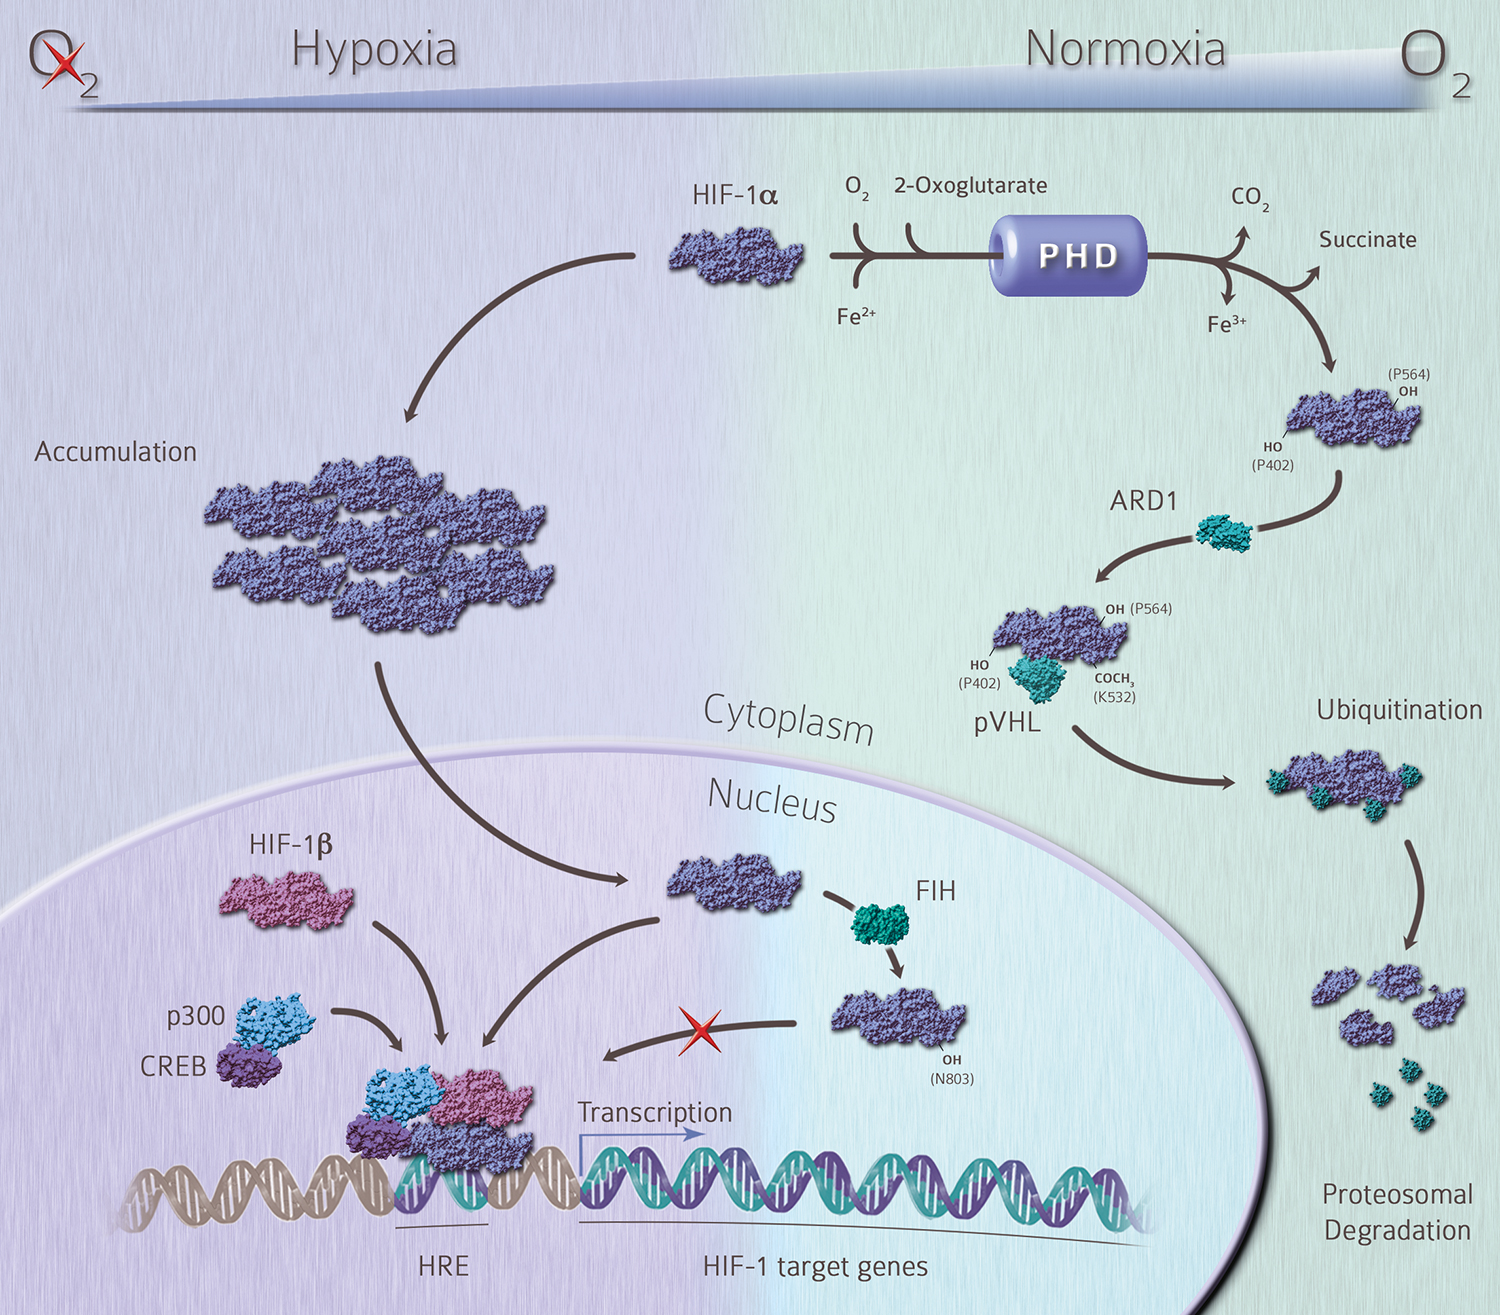 Hypoxia signalling pathway